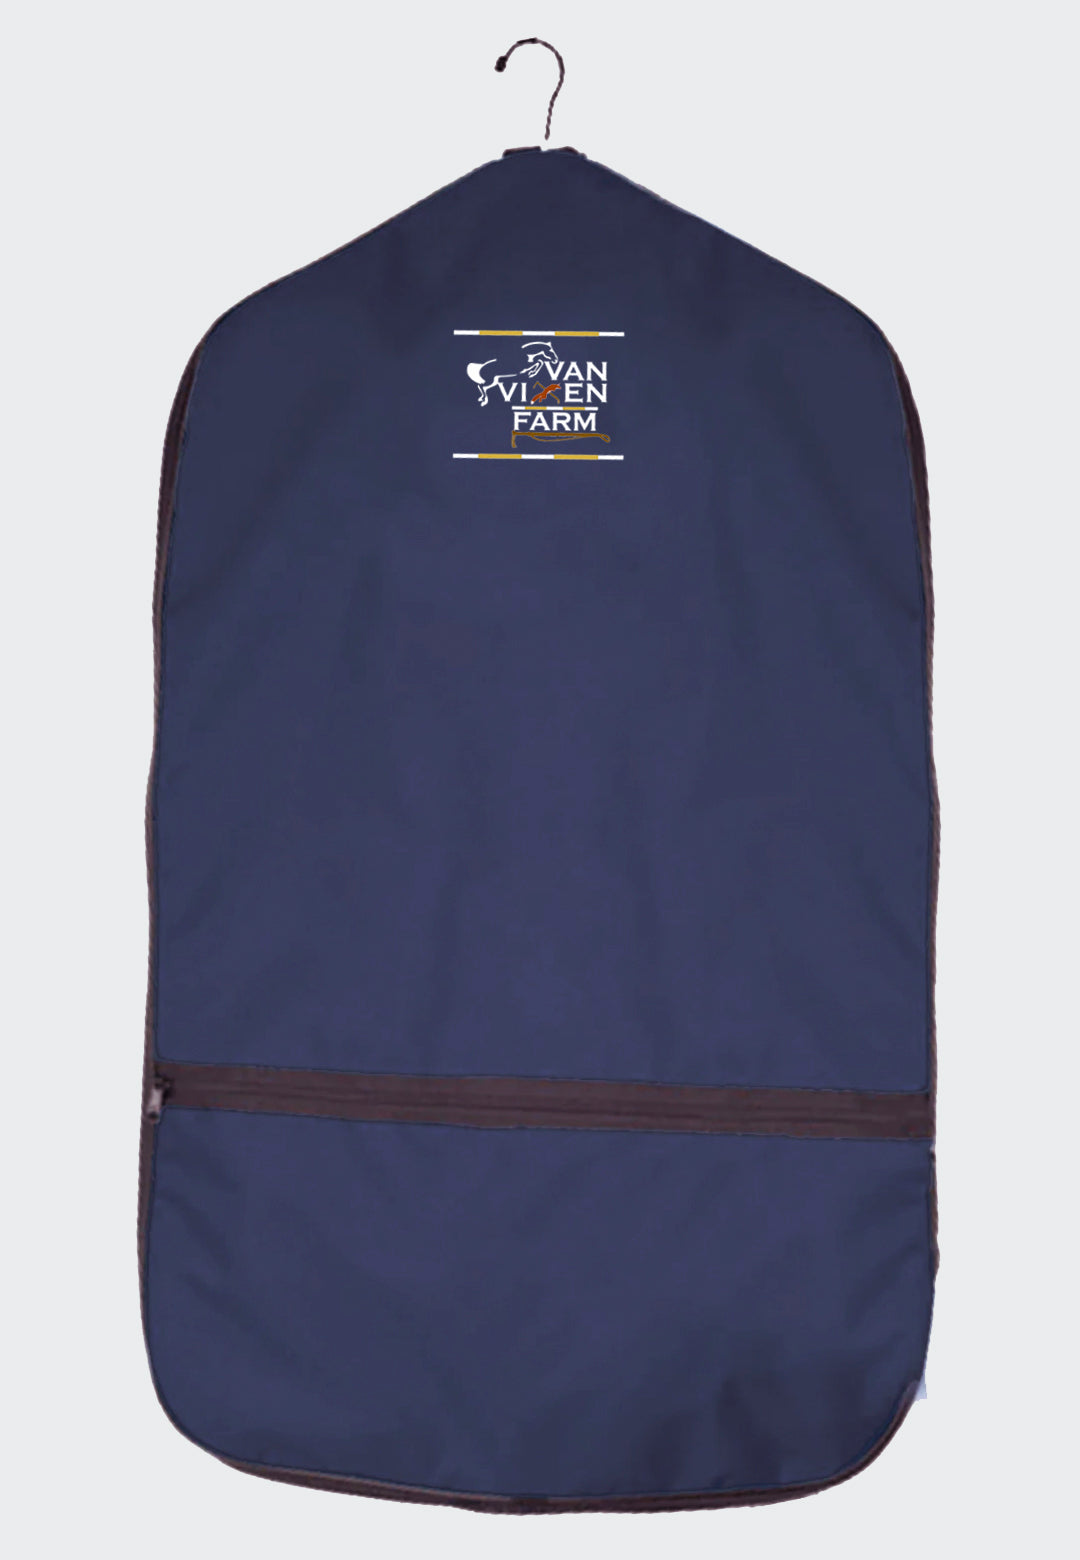 Van vixen farm World Class Equine Black Garment Bag - Original and XL